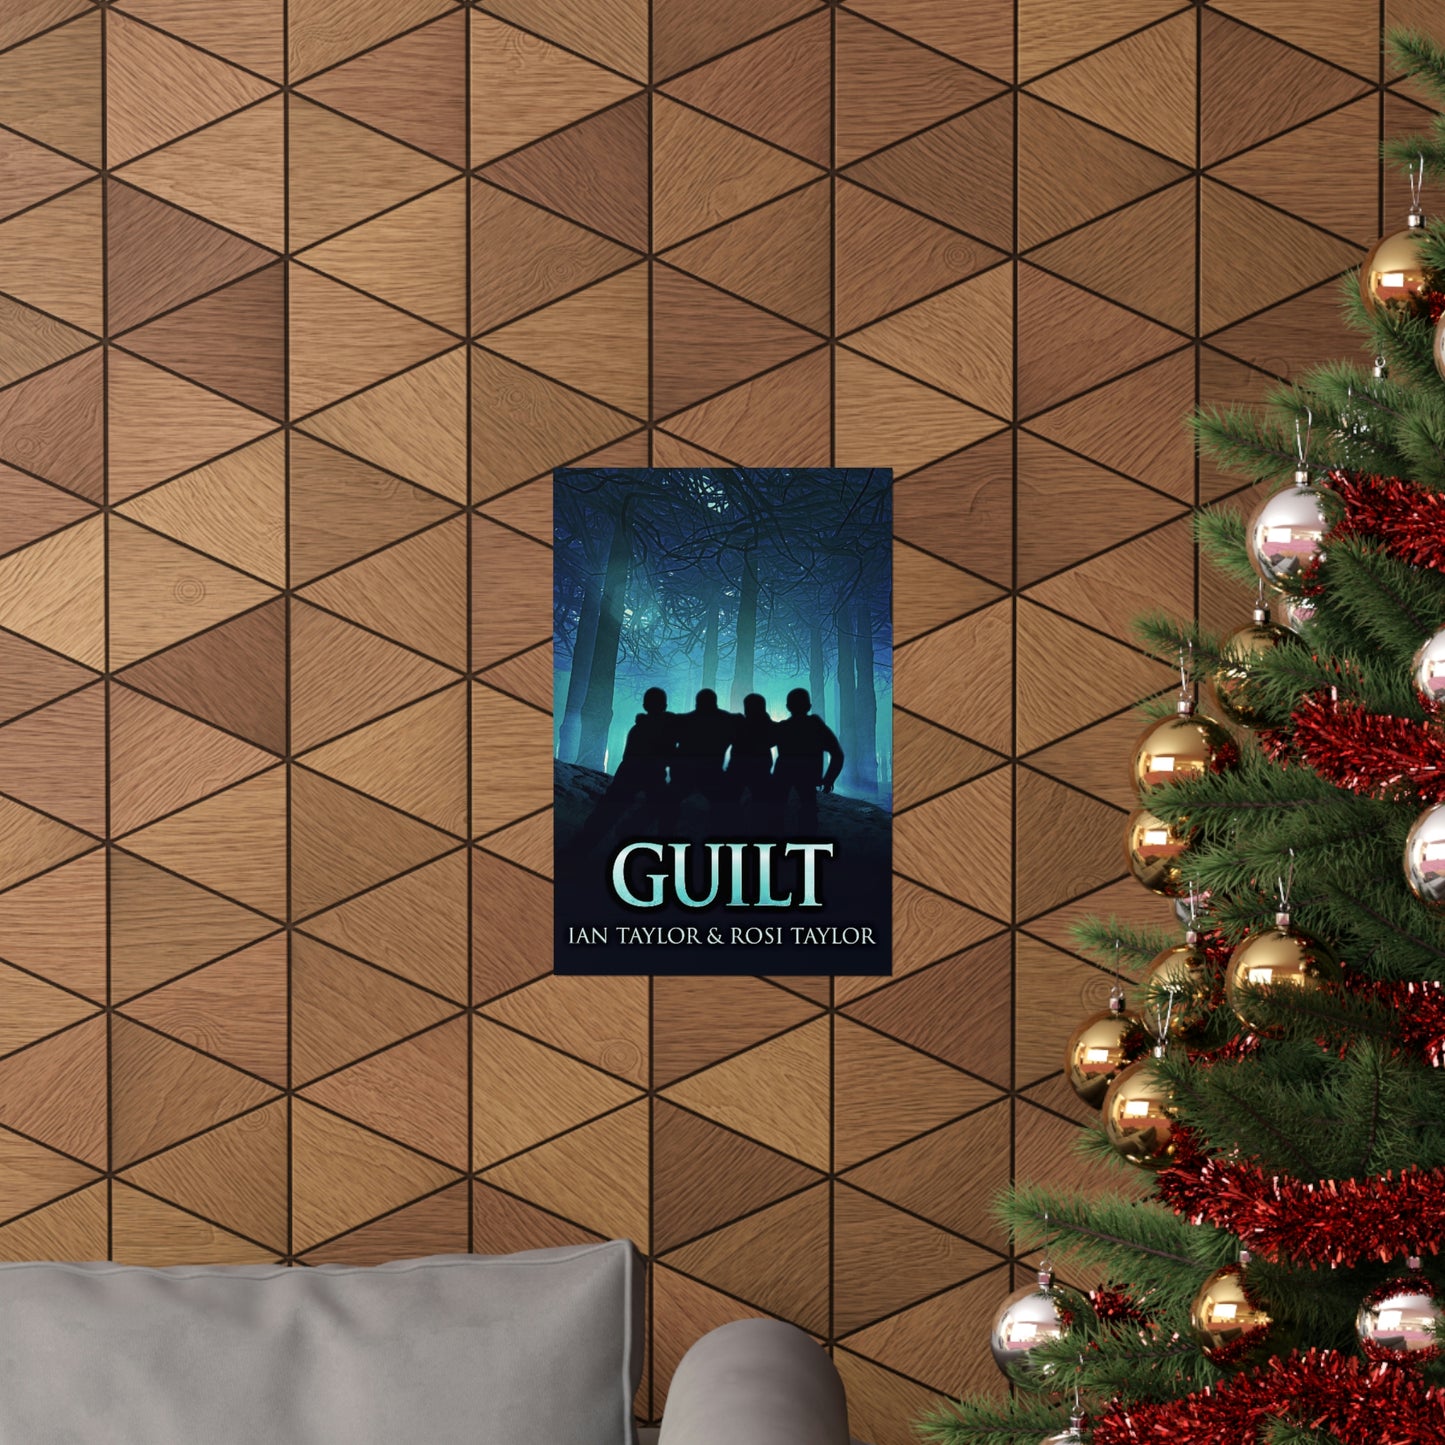 Guilt - Matte Poster